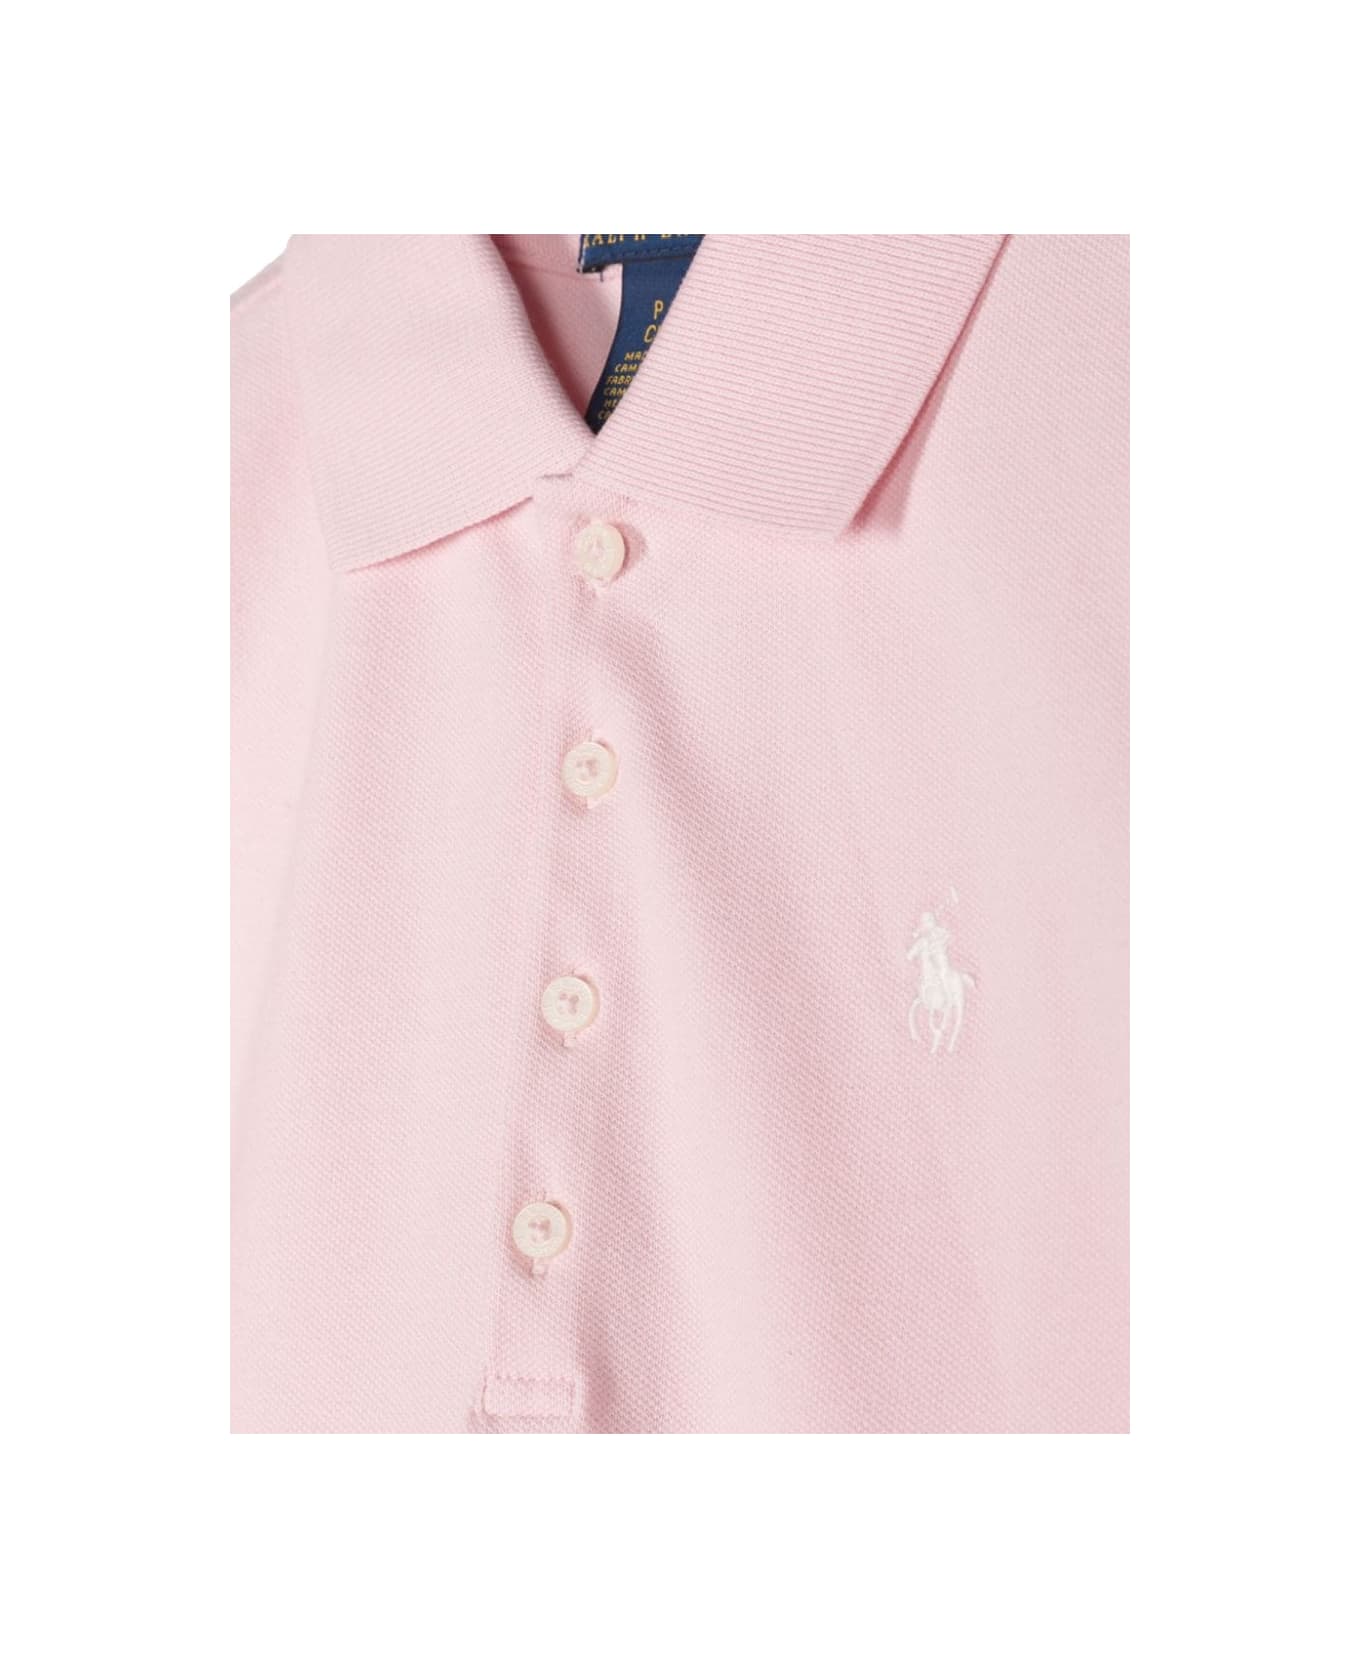 Polo Ralph Lauren Ss Polo Shir-tops-knit - PINK